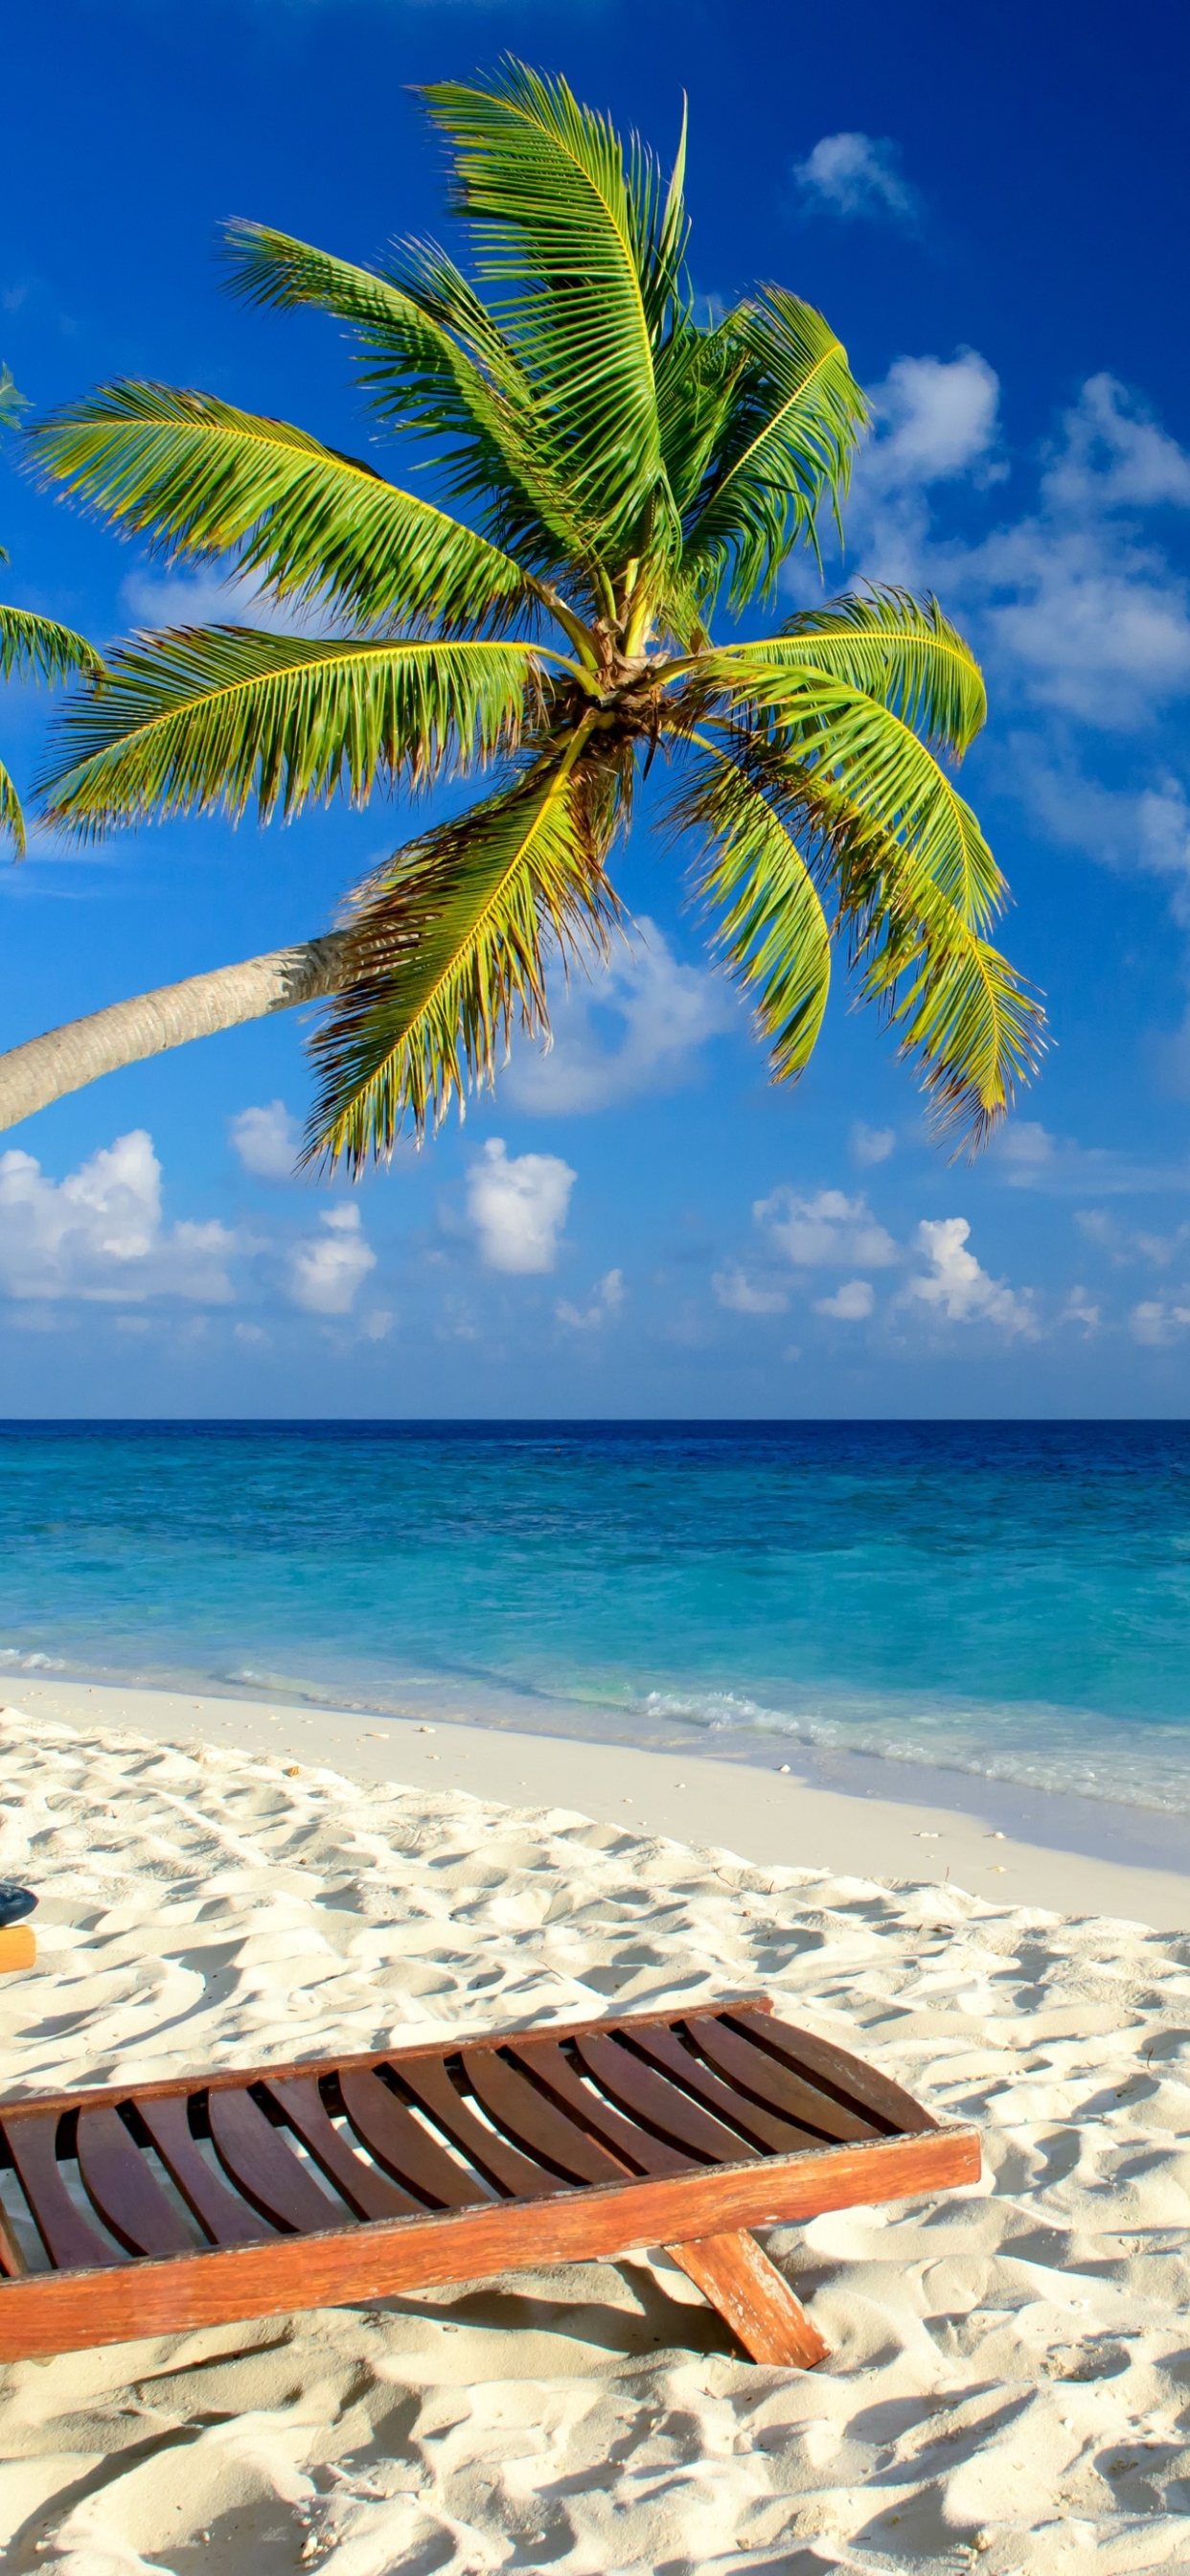 Скачать картинку Пляж, Пальмы, Горизонт, Пальма, Тропики, Фотографии в телефон бесплатно.